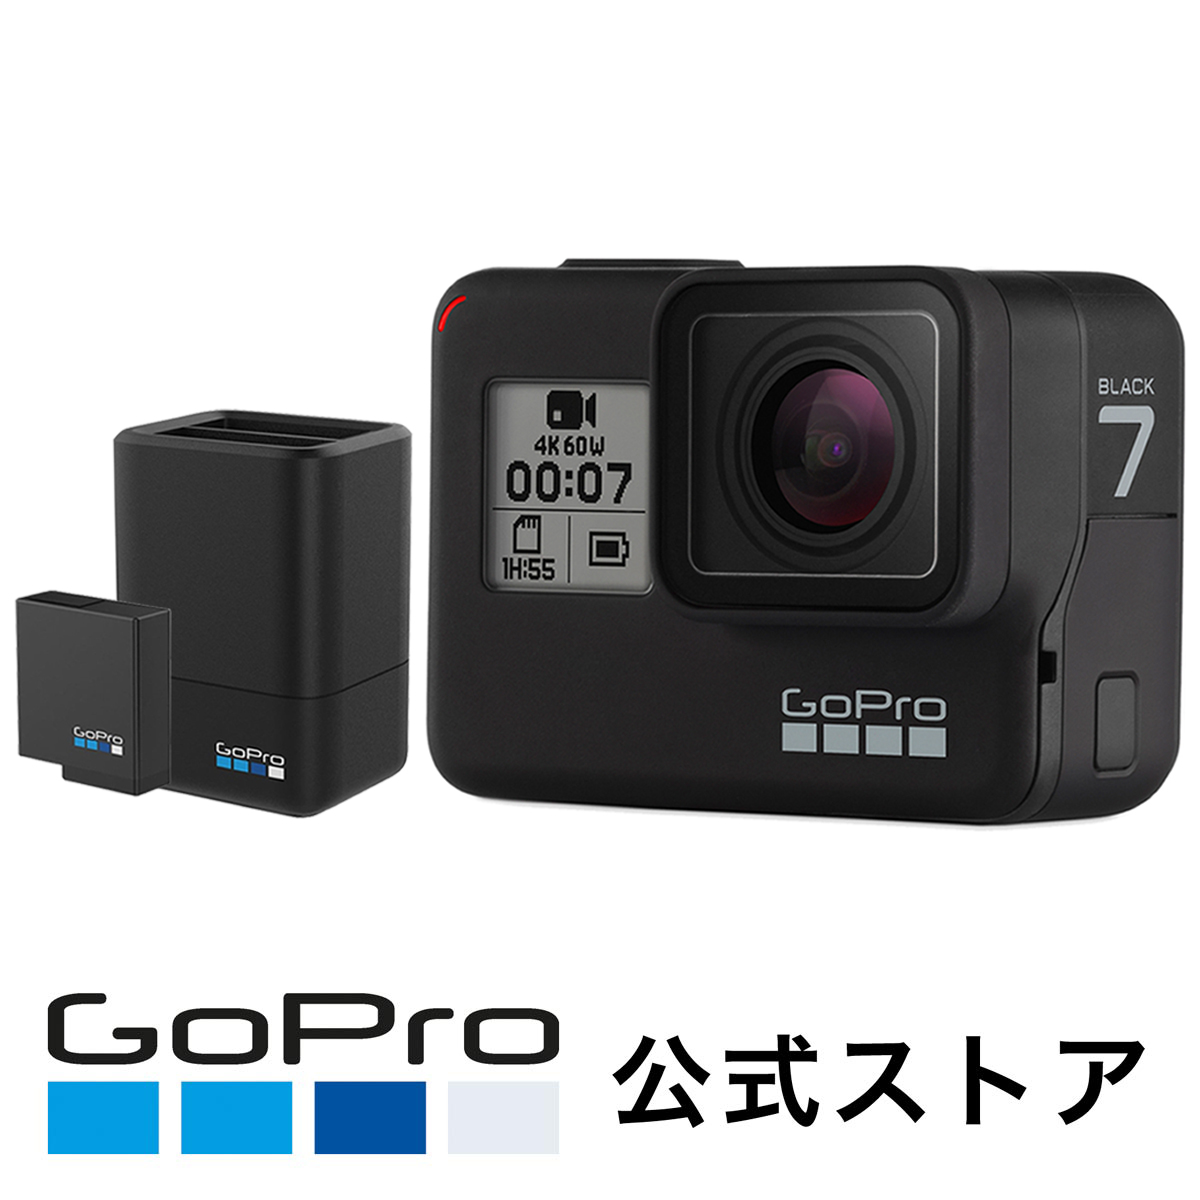 【公式限定】GoPro HERO7 Black デュアルバッテリーチャージャー+バッテリー バンドル CHDHX-701-FW + AADBD-001-AS